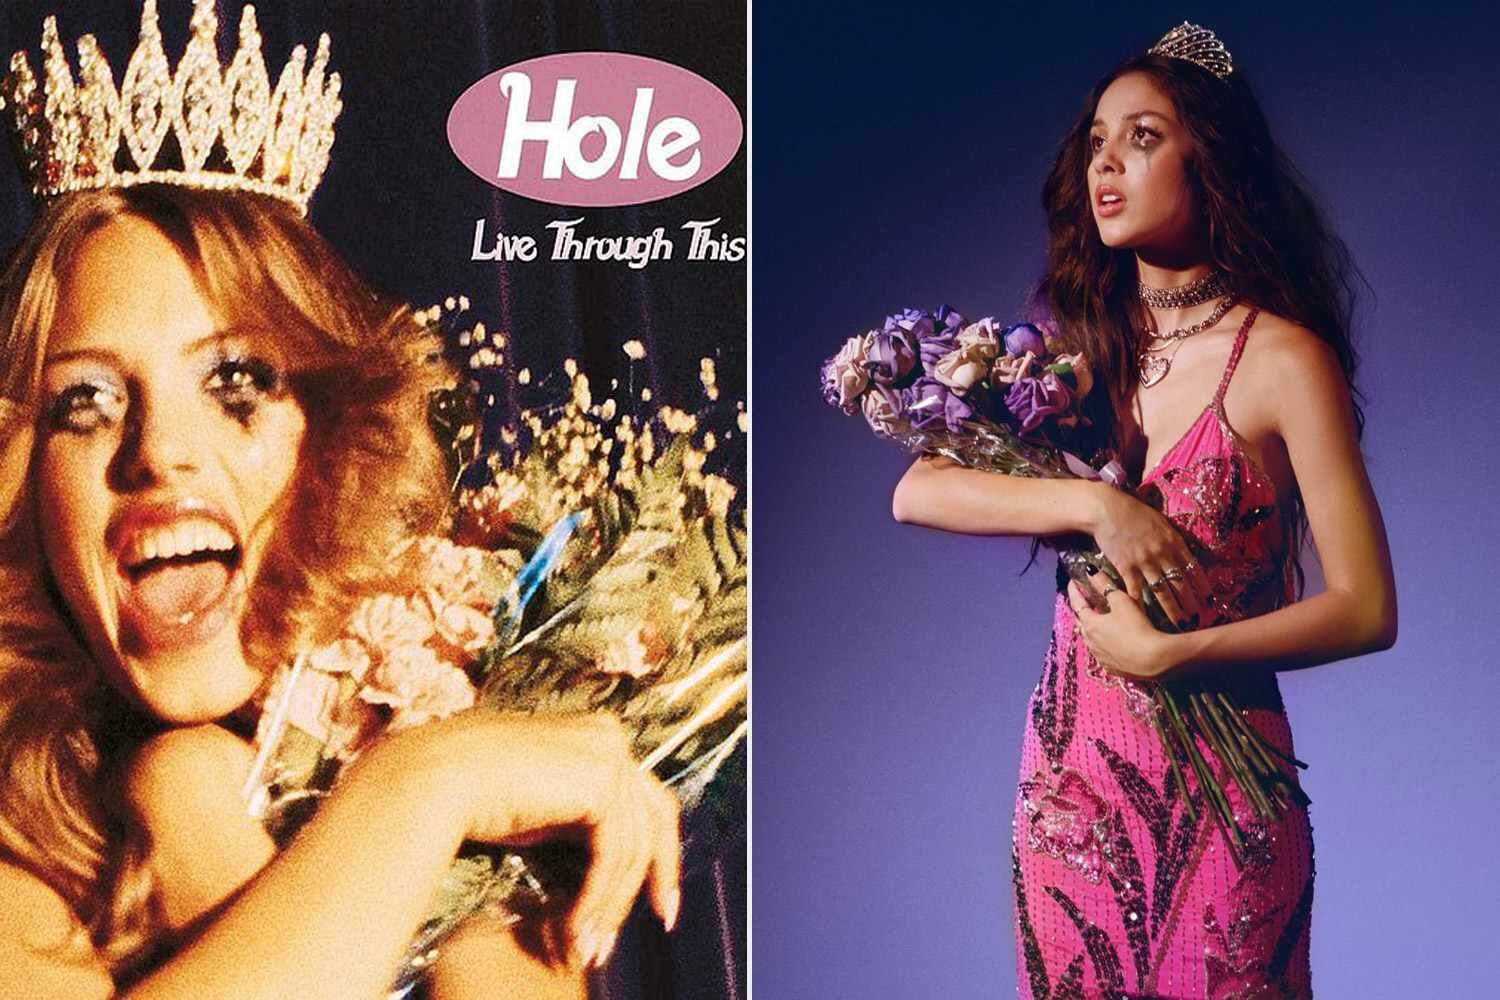 El parecido razonable entre la portada de un disco de Hole y uno de Olivia Rodrigo.